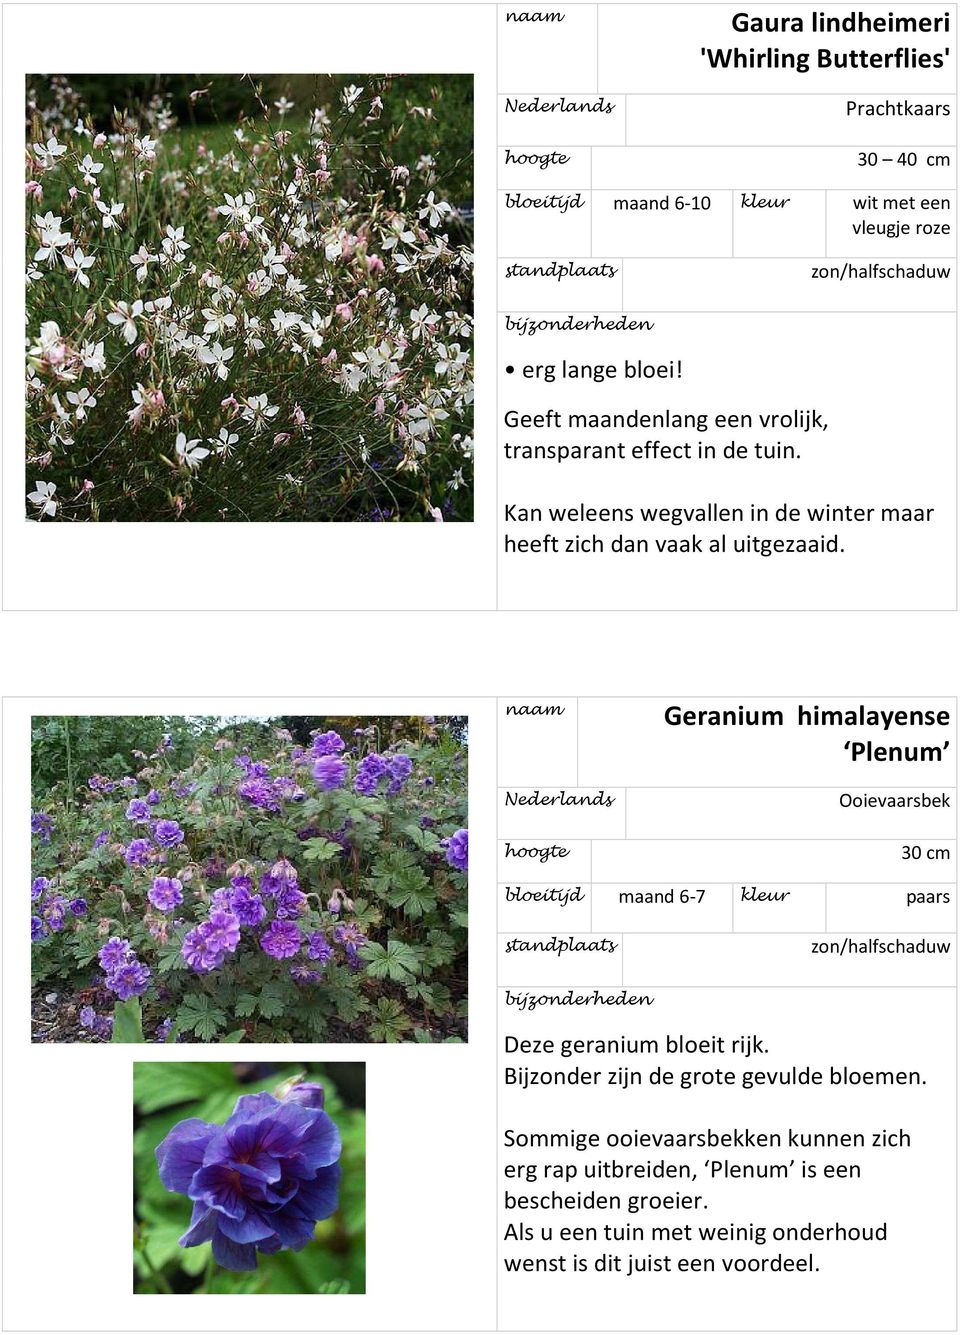 Geranium himalayense Plenum Ooievaarsbek 30 cm bloeitijd maand 6-7 kleur paars Deze geranium bloeit rijk. Bijder zijn de grote gevulde bloemen.